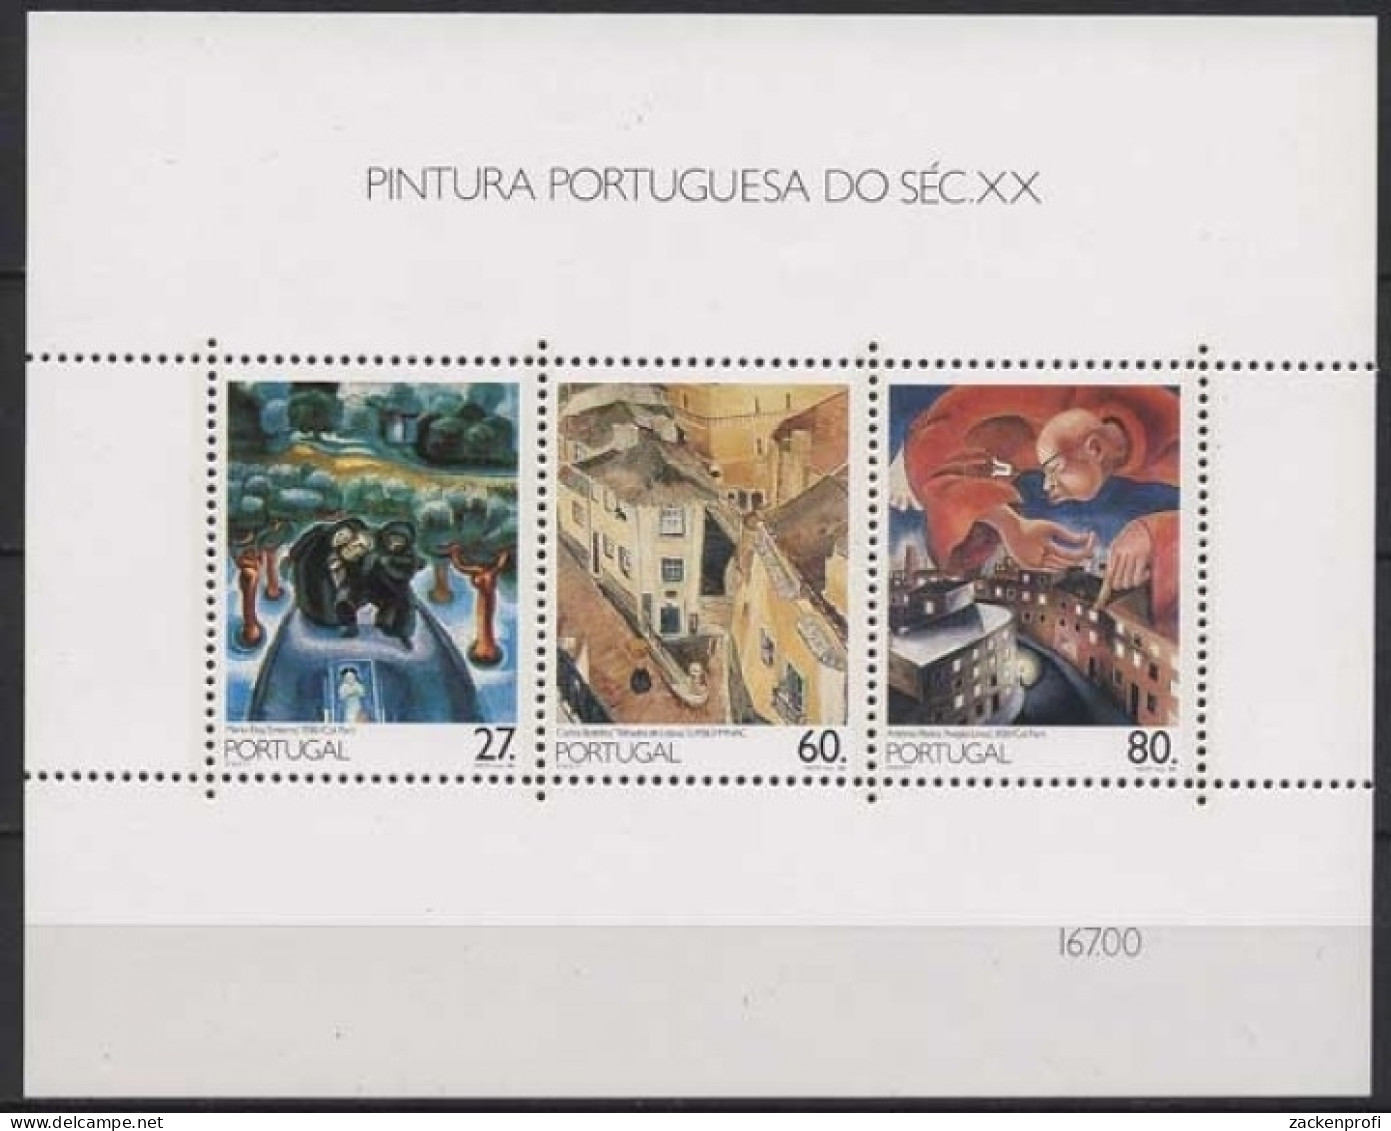 Portugal 1988 Gemälde Im 20. Jh. Block 61 Postfrisch (C91094) - Hojas Bloque